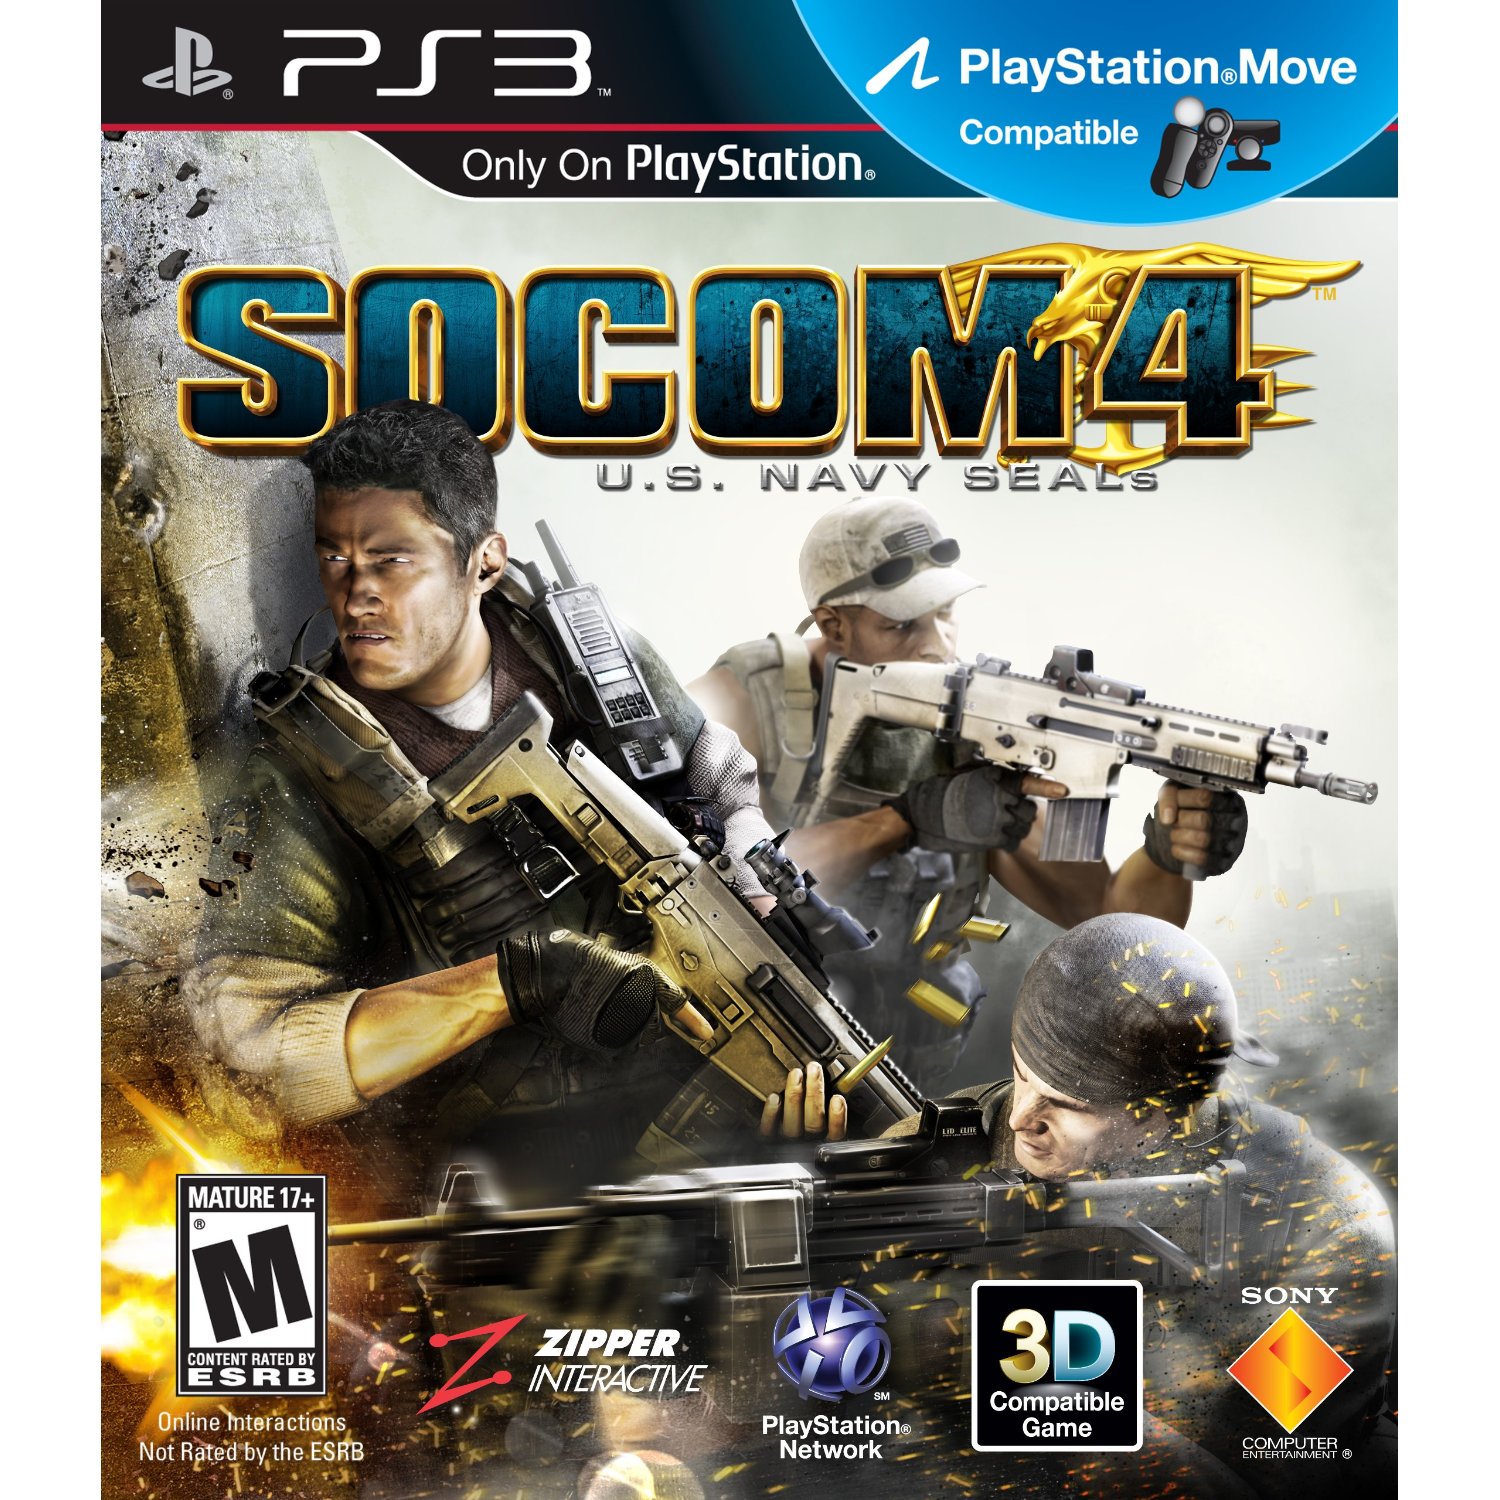 PS3: SOCOM 4: U.S. NAVY SEALS (COMPLETE)